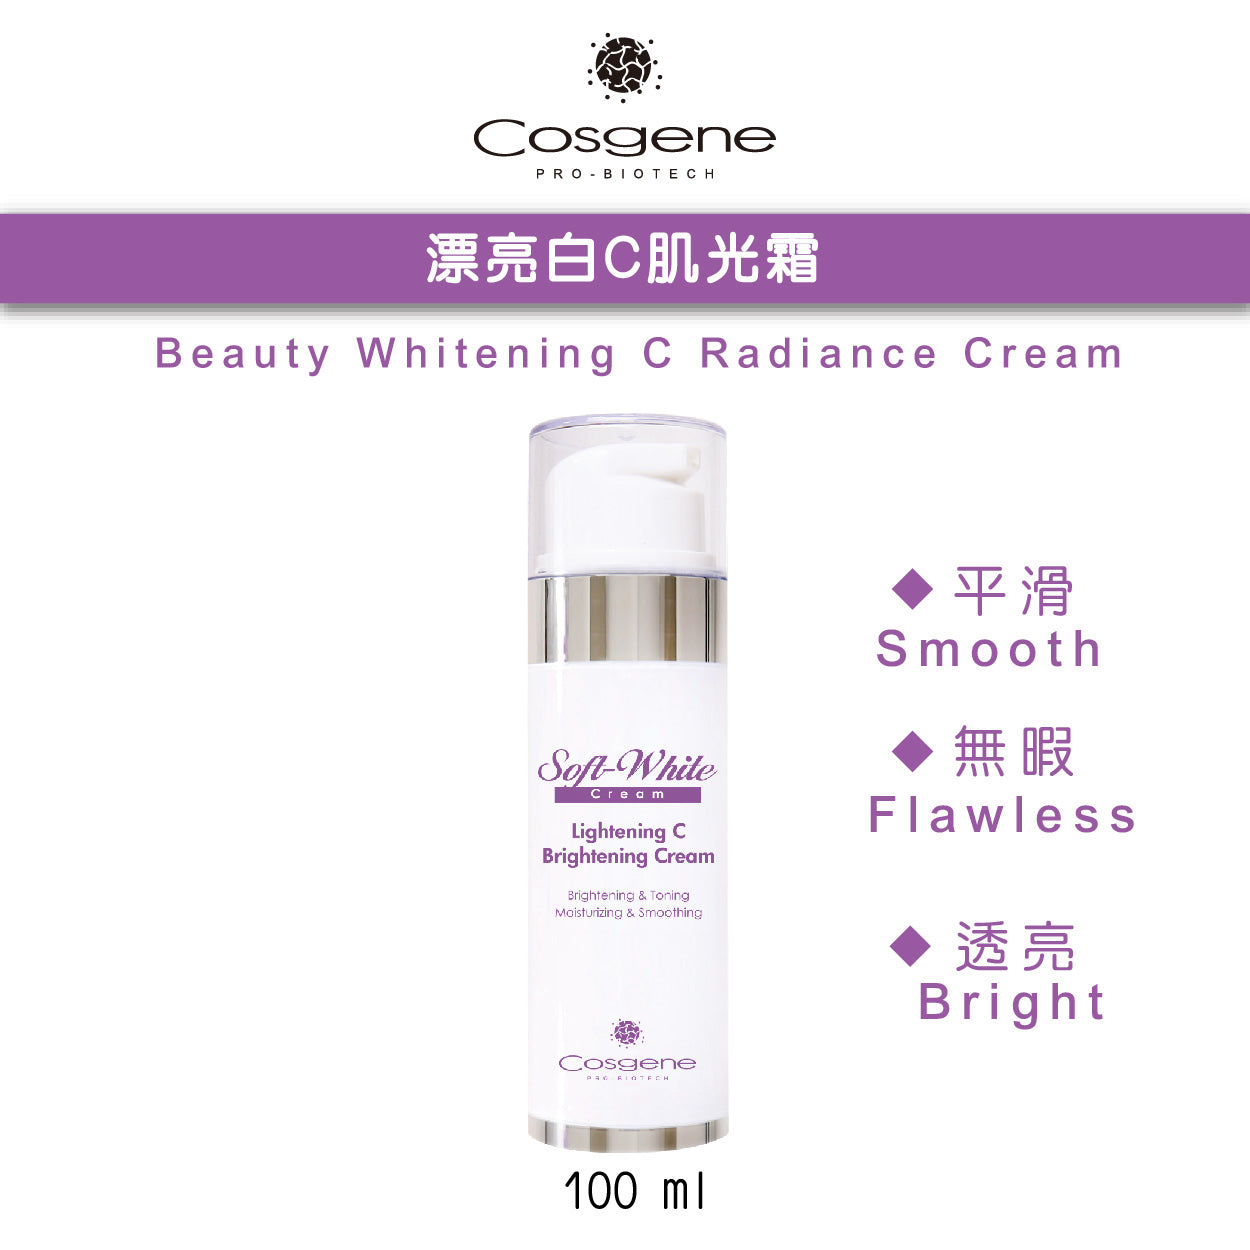 【COSGENE】Beauty Whitening C Radiance Cream